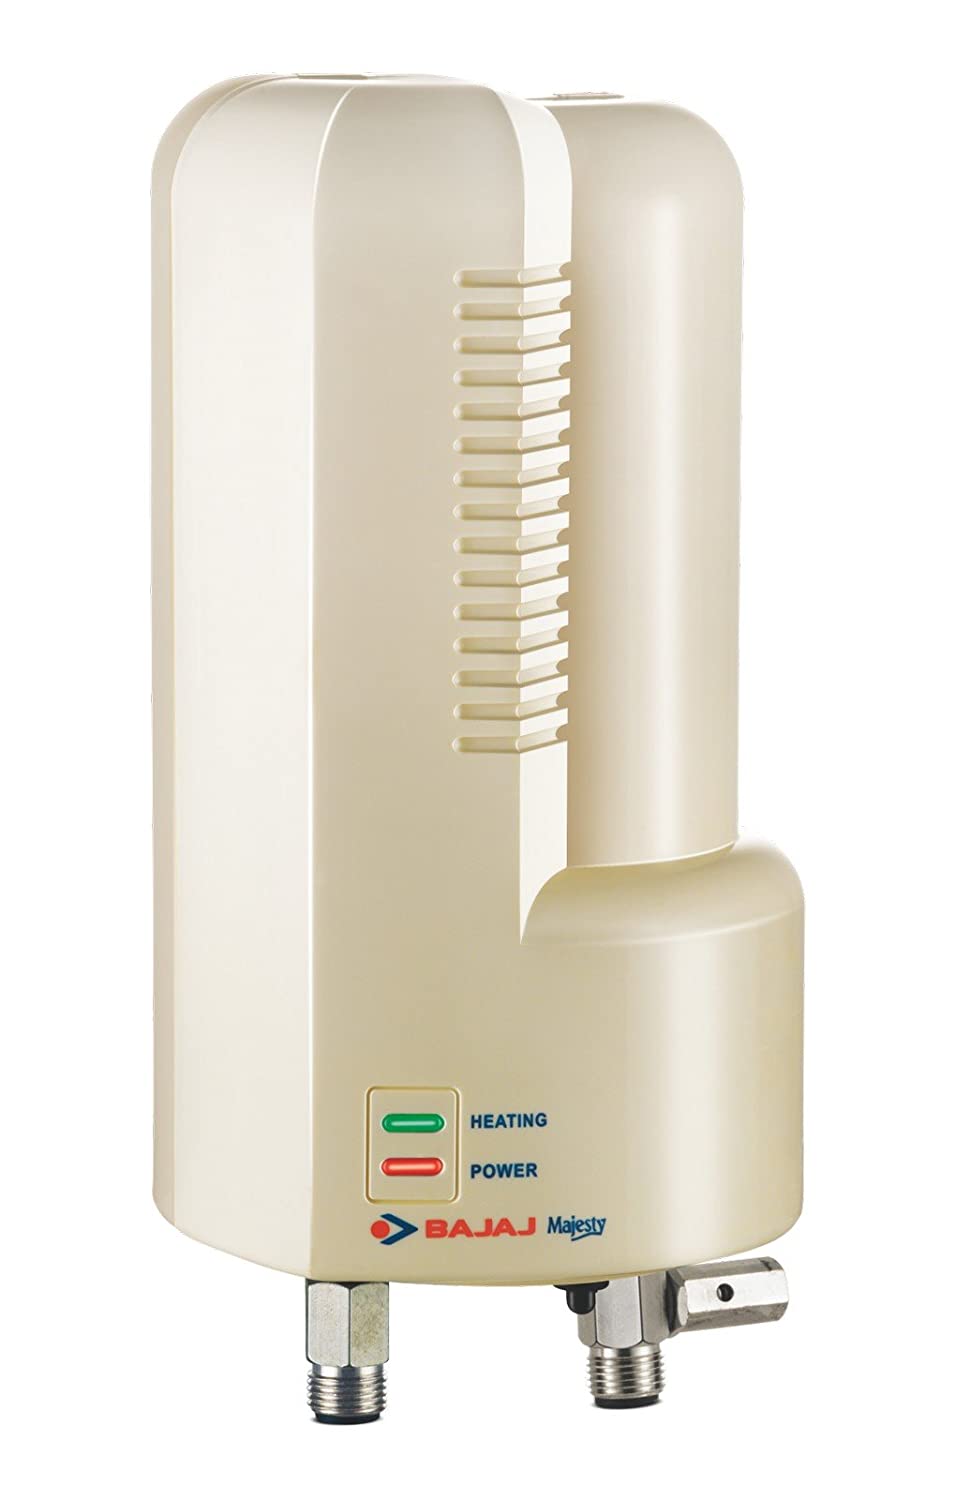 Bajaj Majesty IWH 3-Litre 4500-Watt Water Heater (White)